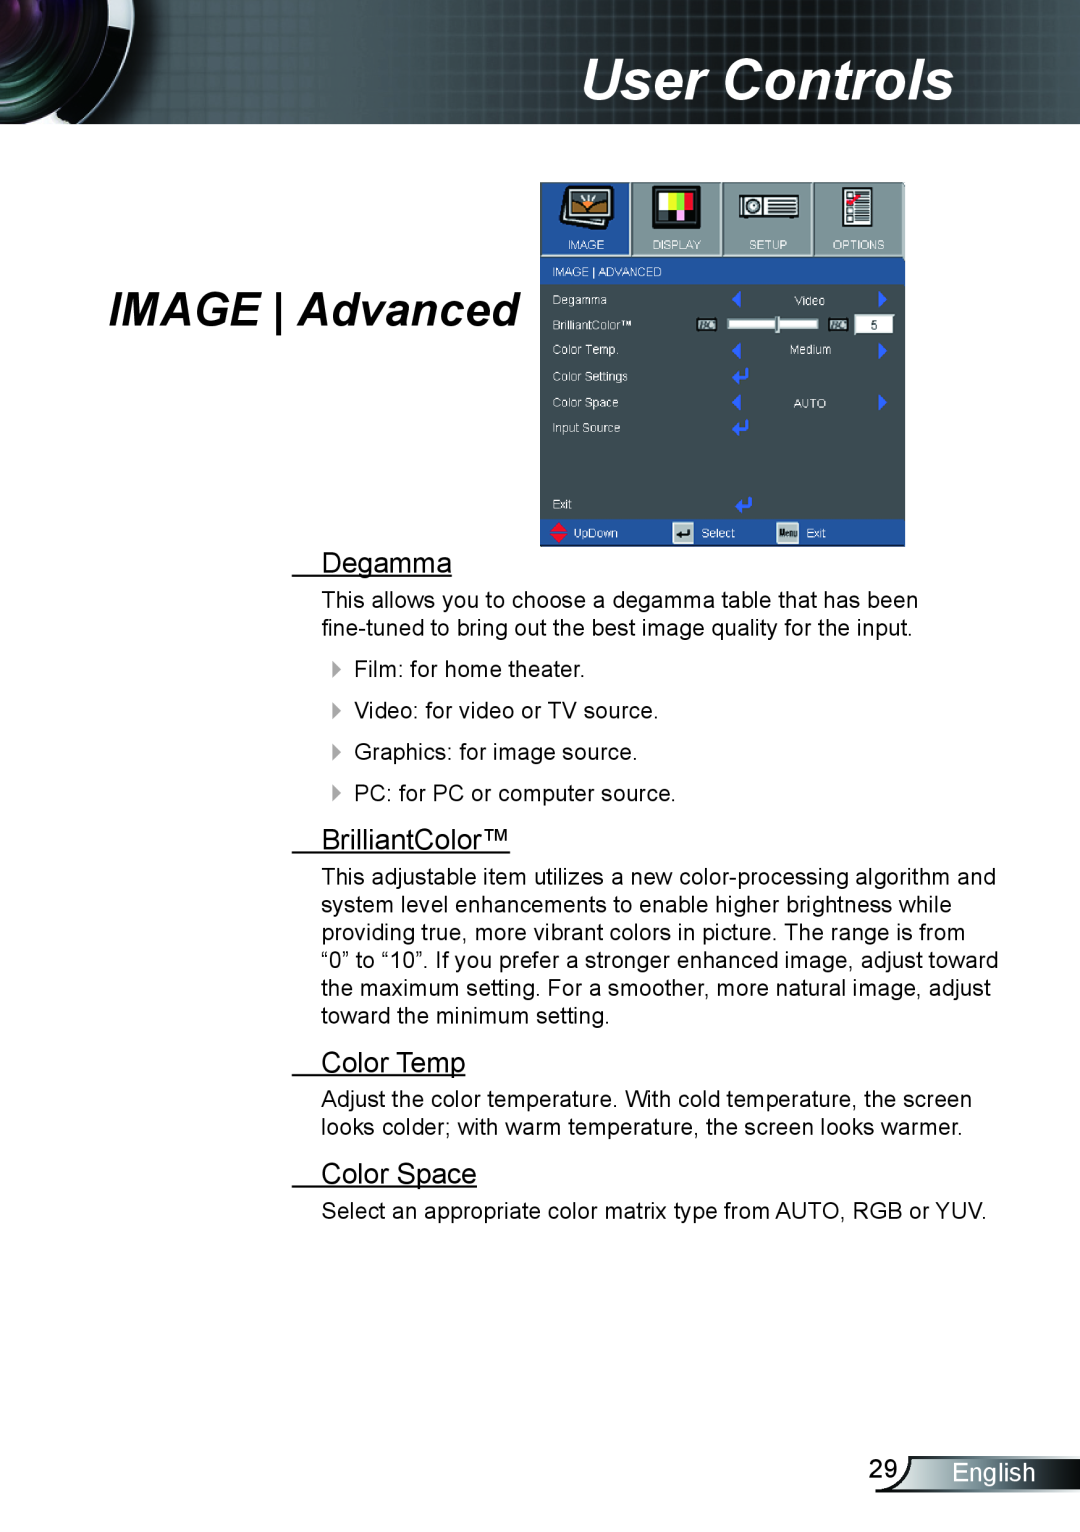 Optoma Technology TX615GOV, TX762 IMAGE Advanced, Degamma, BrilliantColor, Color Temp, Color Space, English, User Controls 